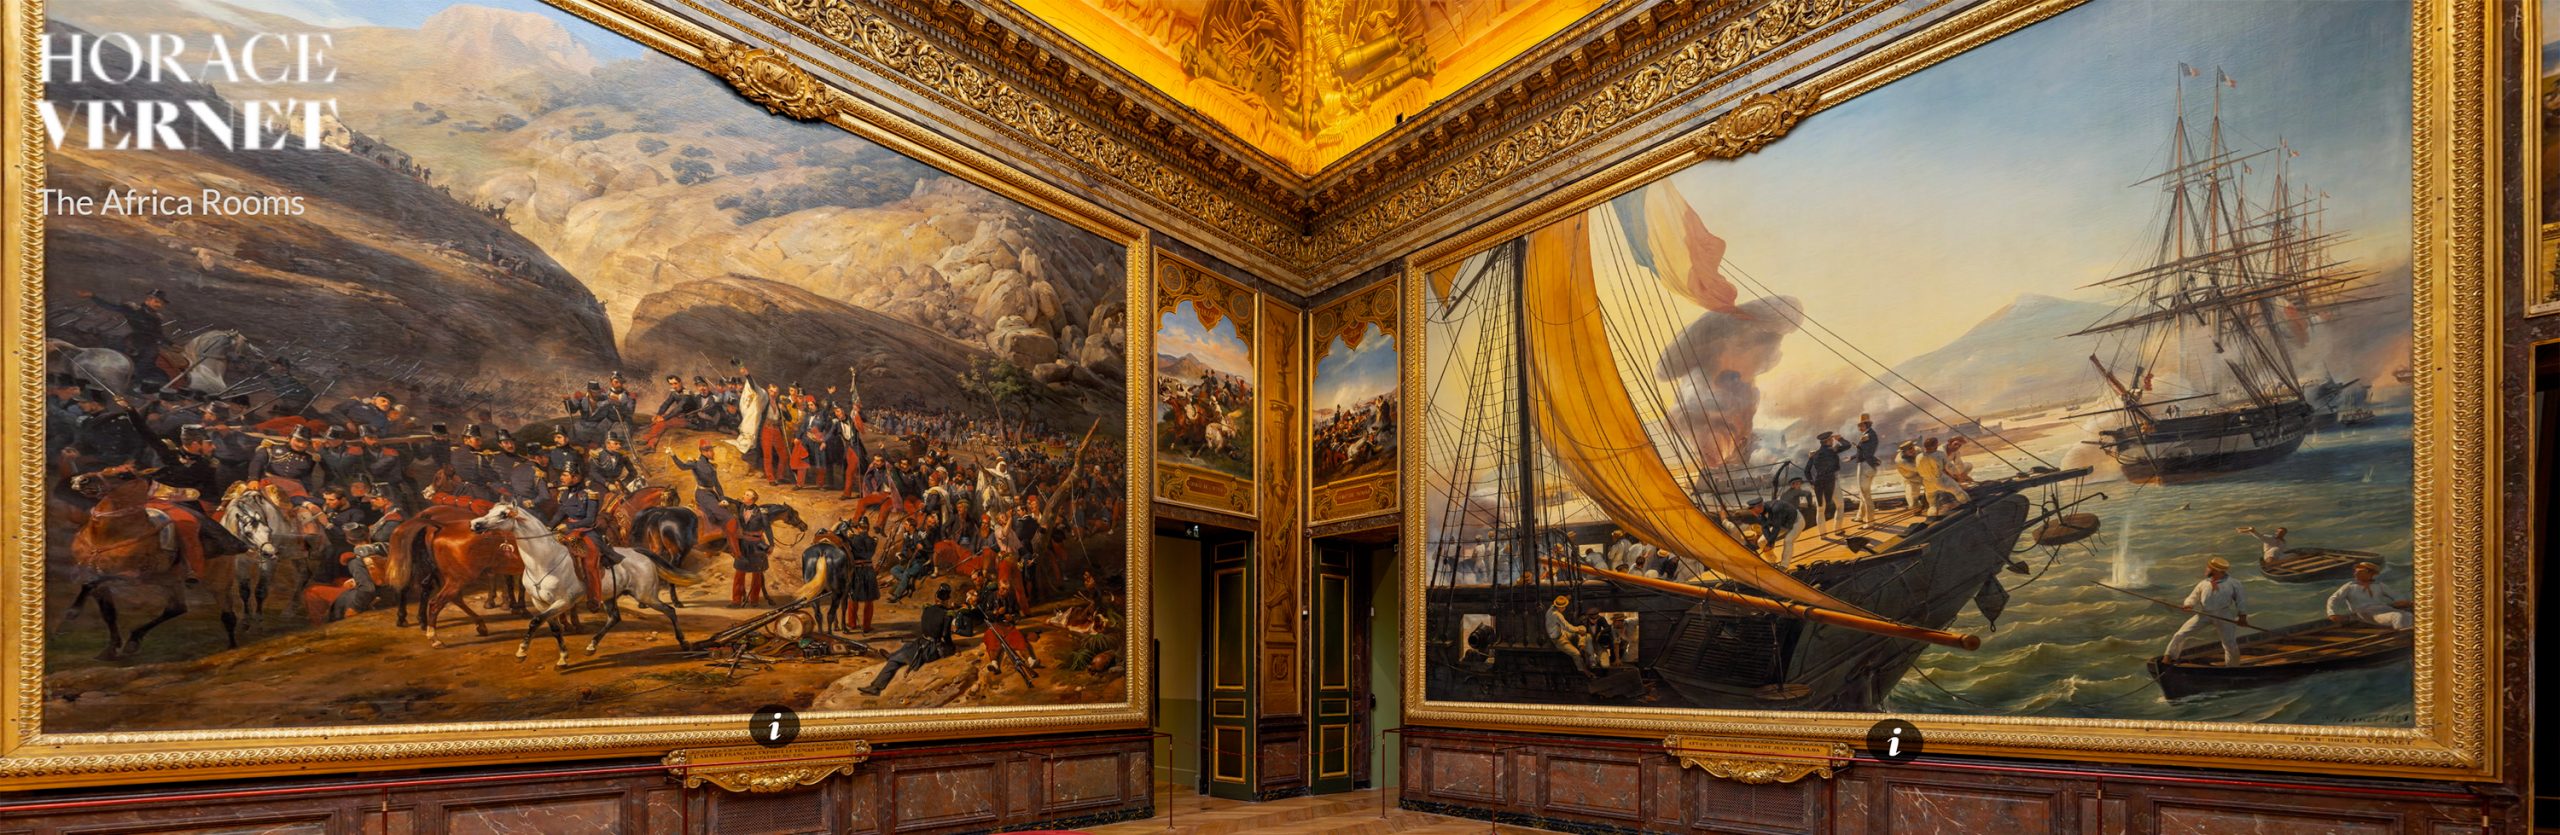 Exposición 'Horace Vernet' - Château de Versailles